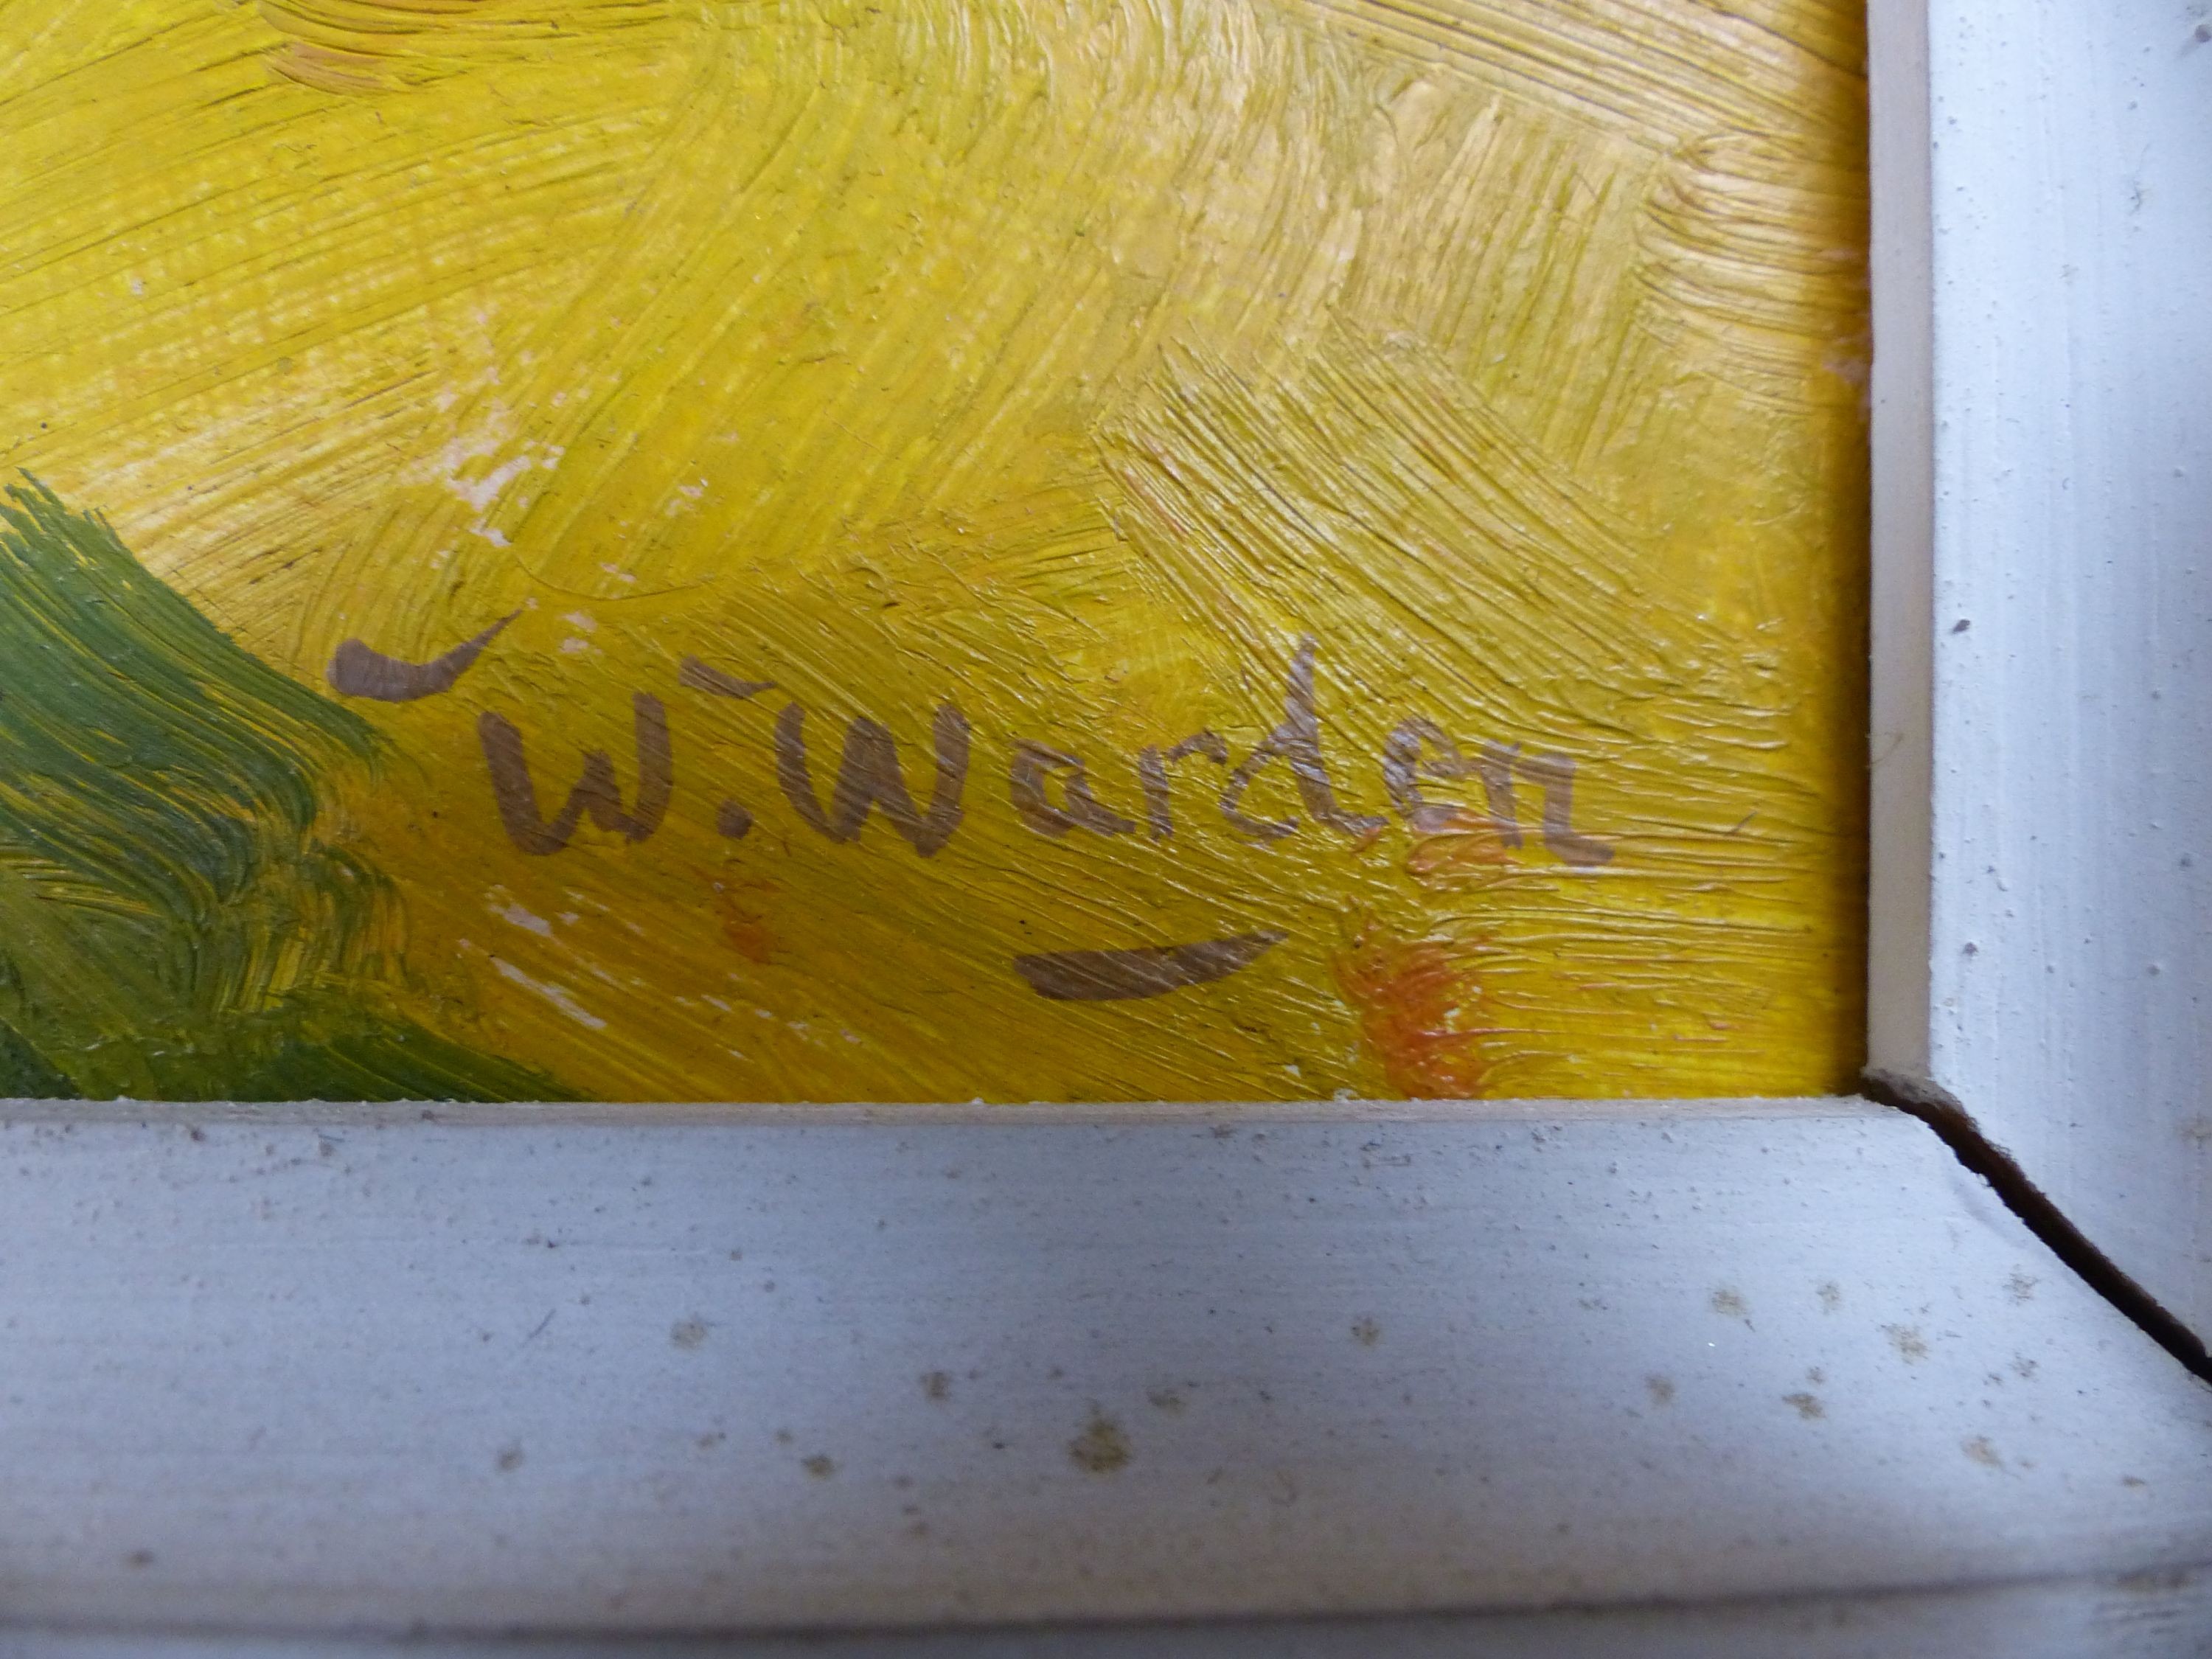 William Warden (1908-1982), oil on board, 'Cornfield, Provence', signed, 20 x 25cm